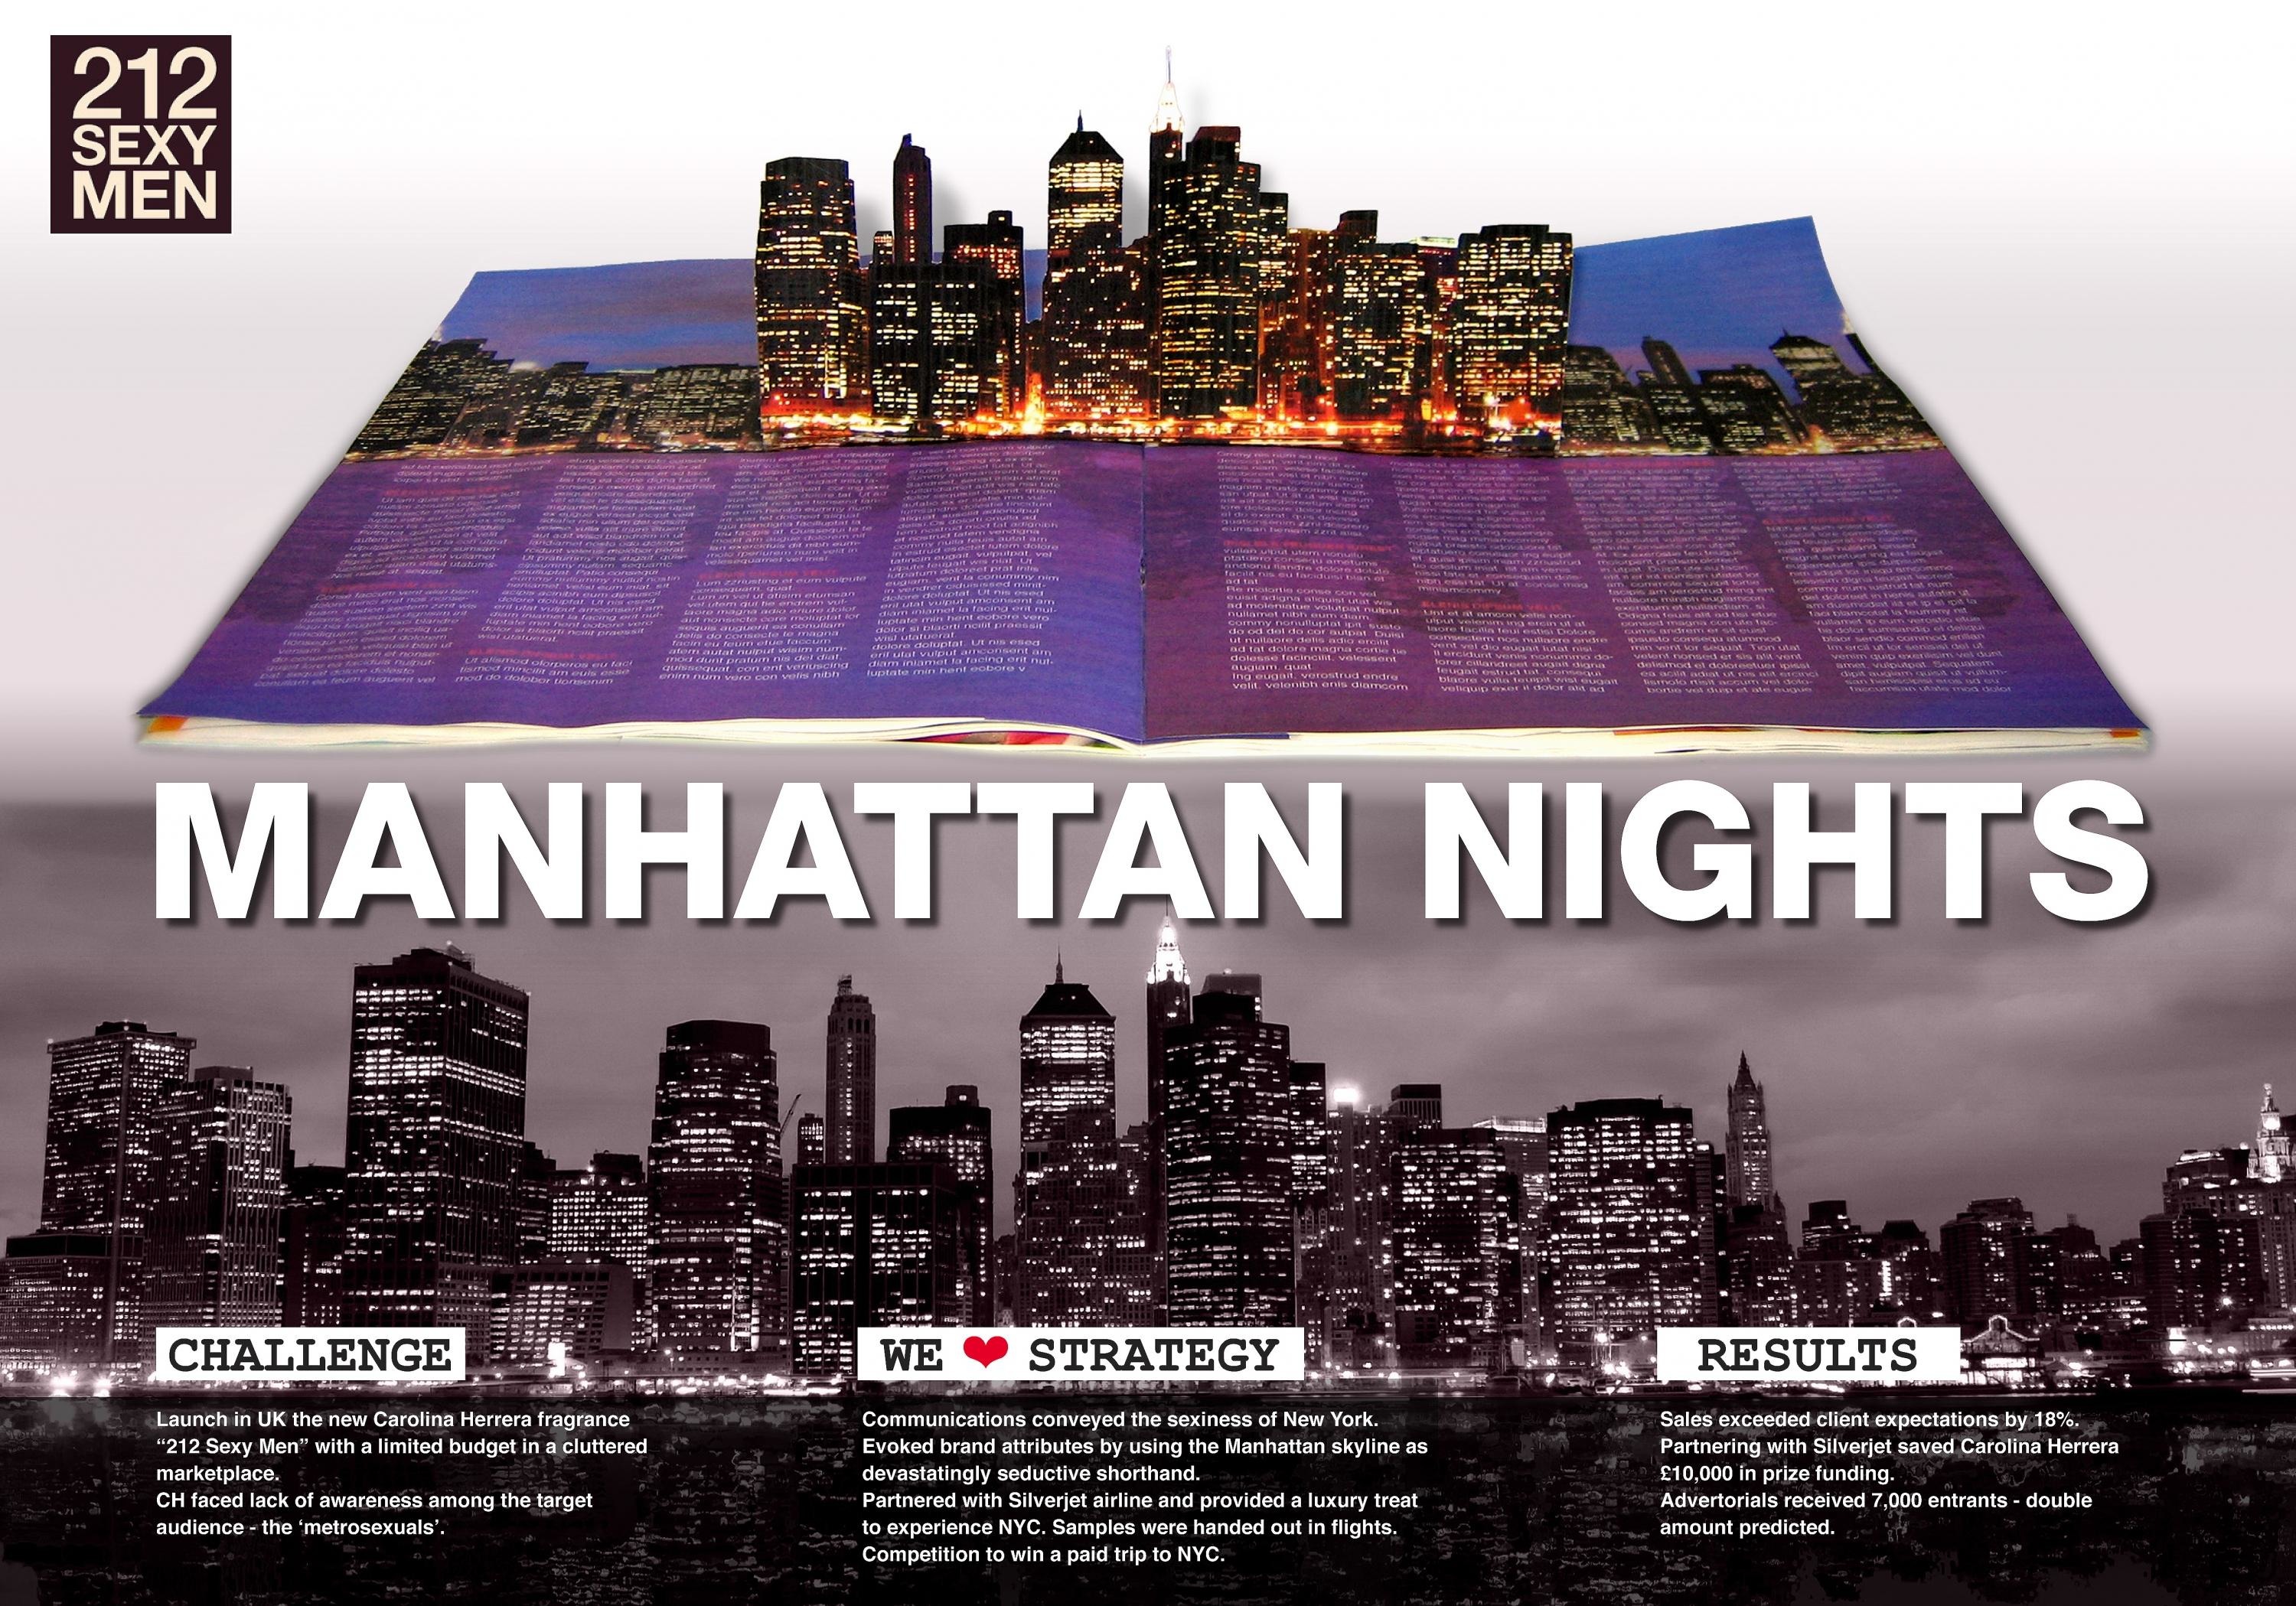 MANHATTAN NIGHTS